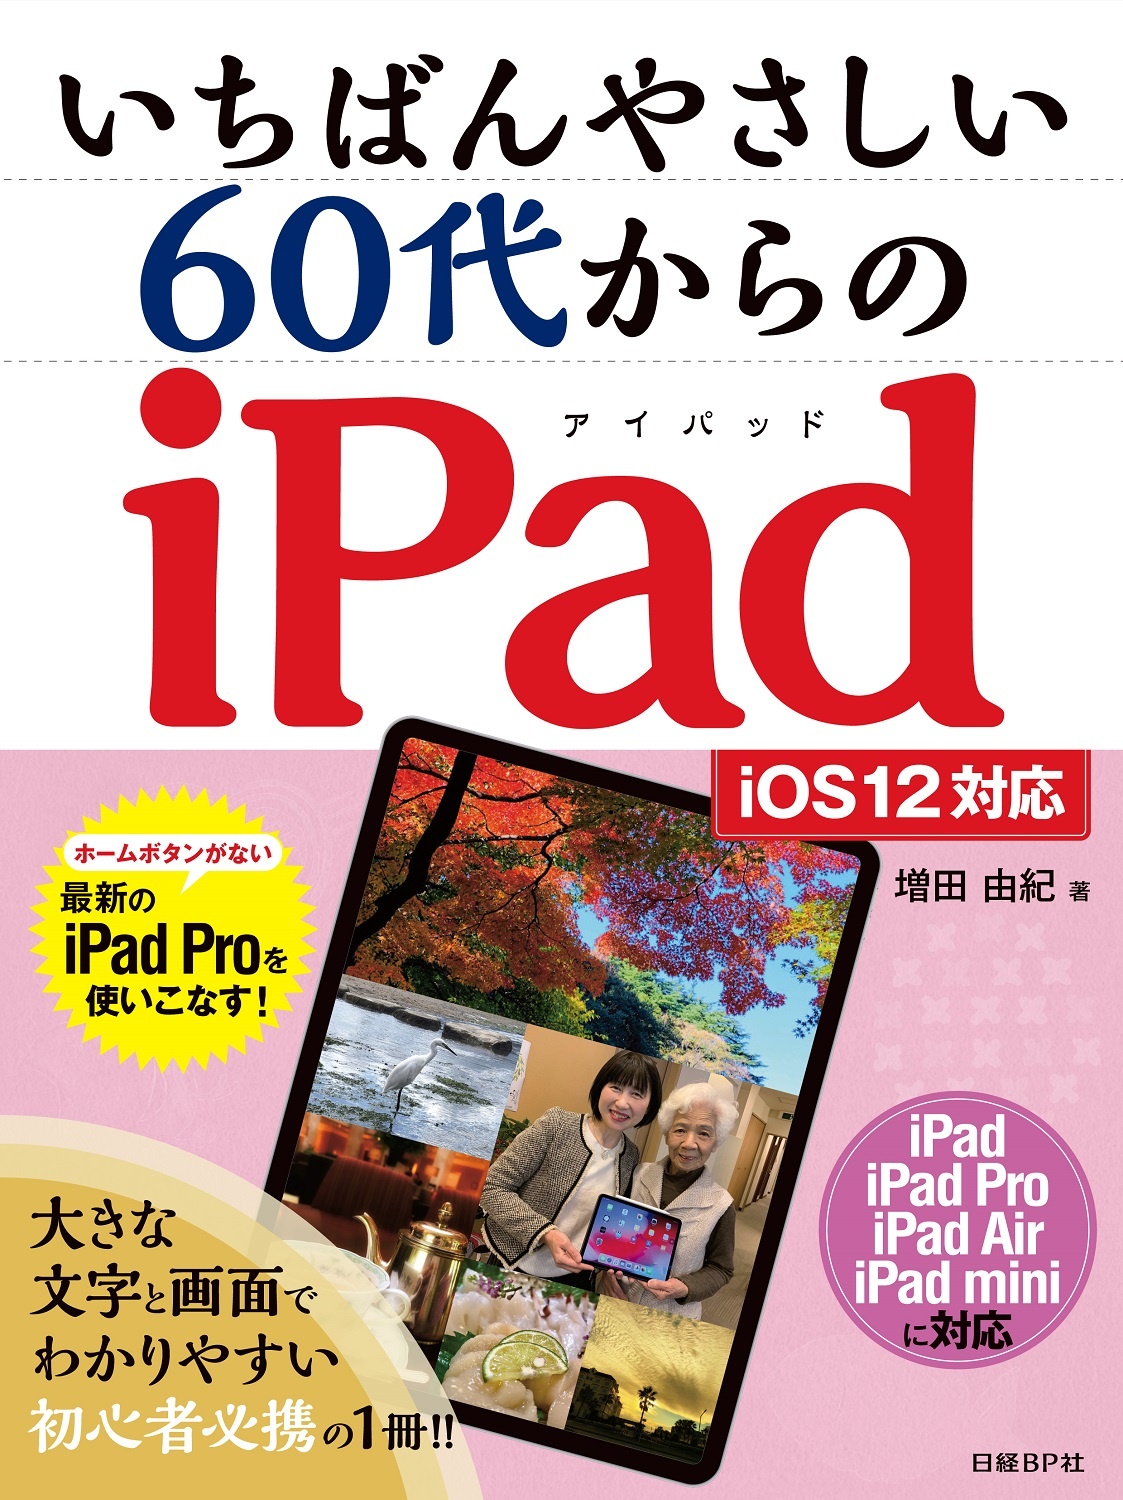 いちばんやさしい 60代からのiPad iOS12対応